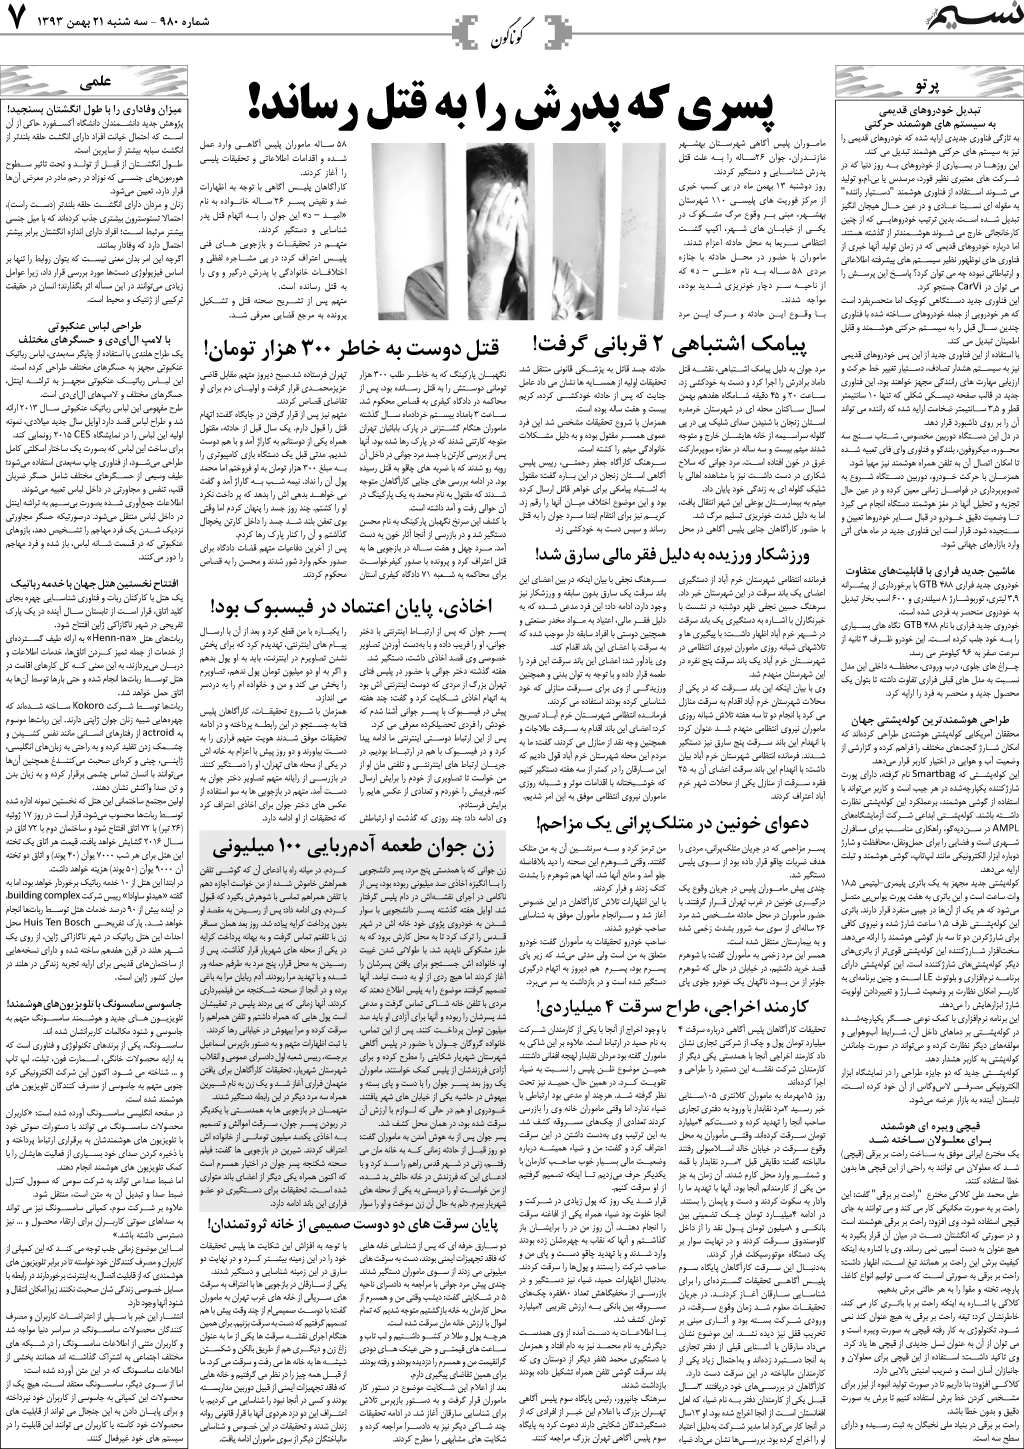 صفحه گوناگون روزنامه نسیم شماره 980